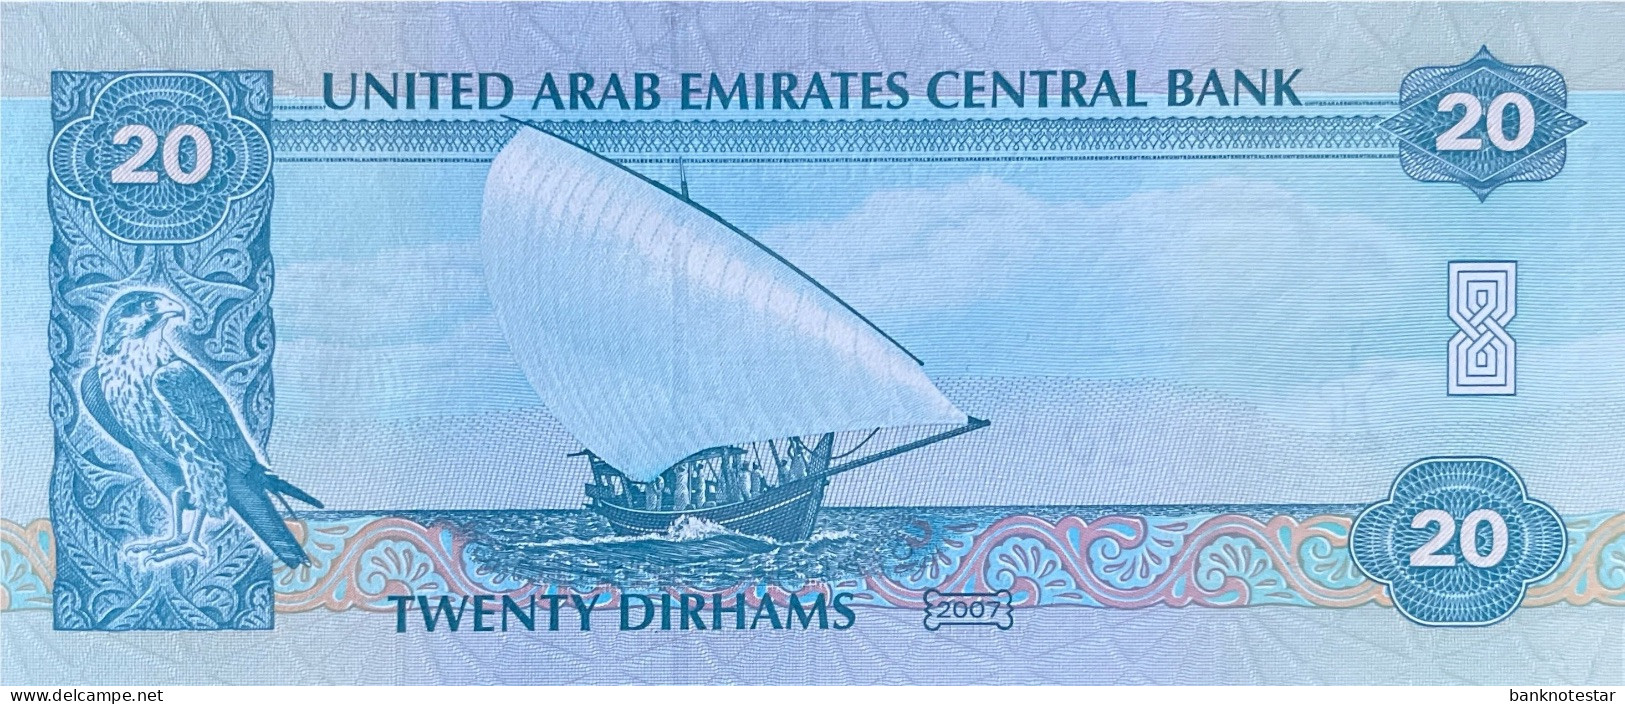 United Arab Emirates 20 Dirhams, P-21c (2007) - UNC - Ver. Arab. Emirate